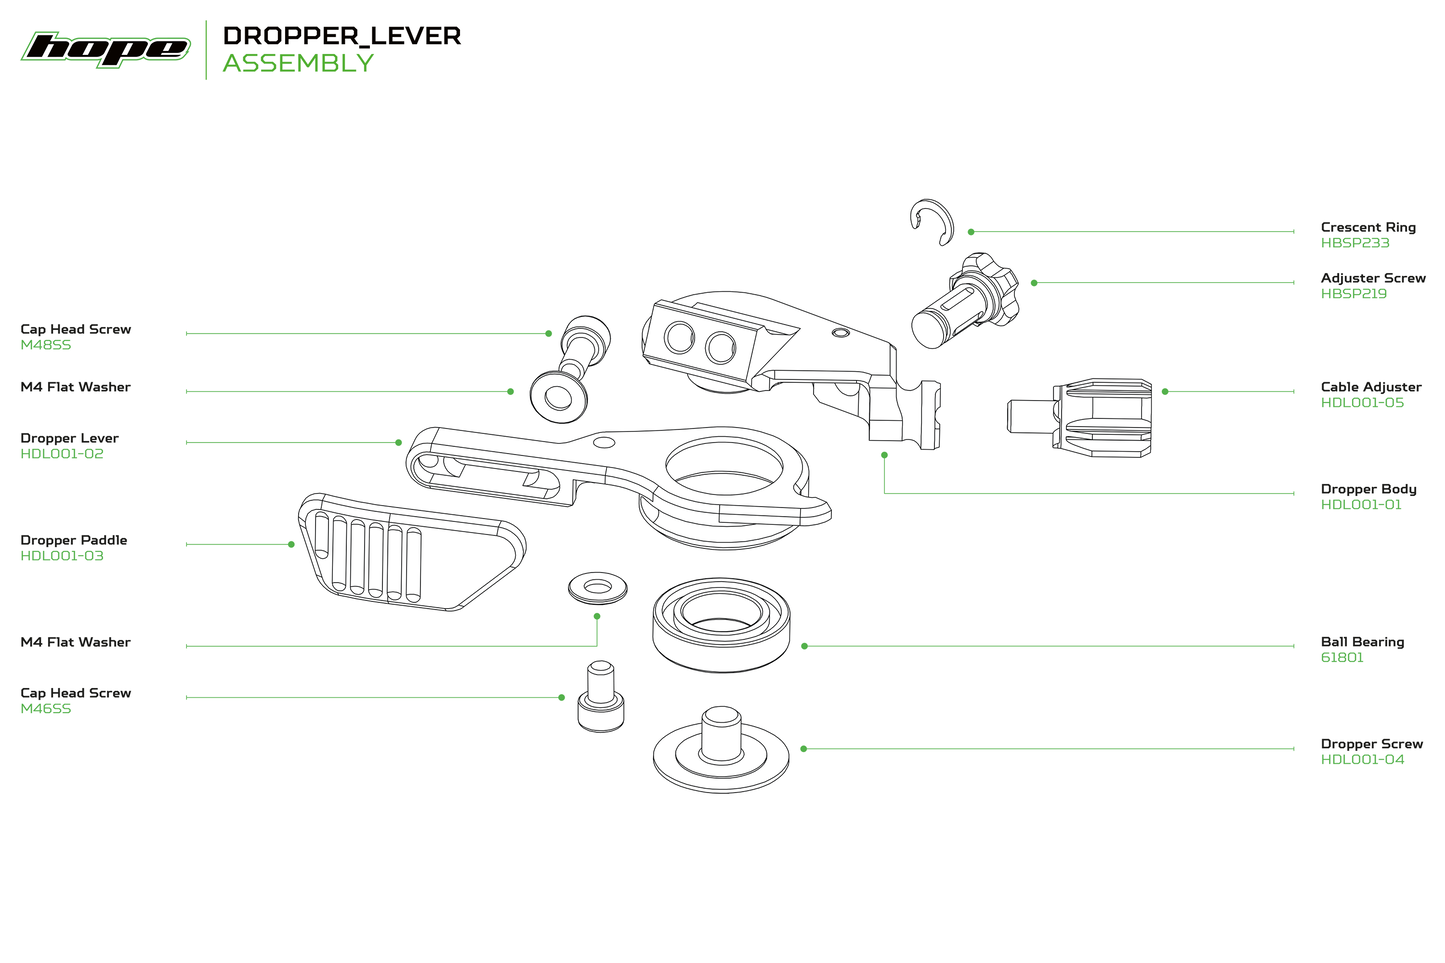 Hope Dropper Lever - Main Screw - Silver